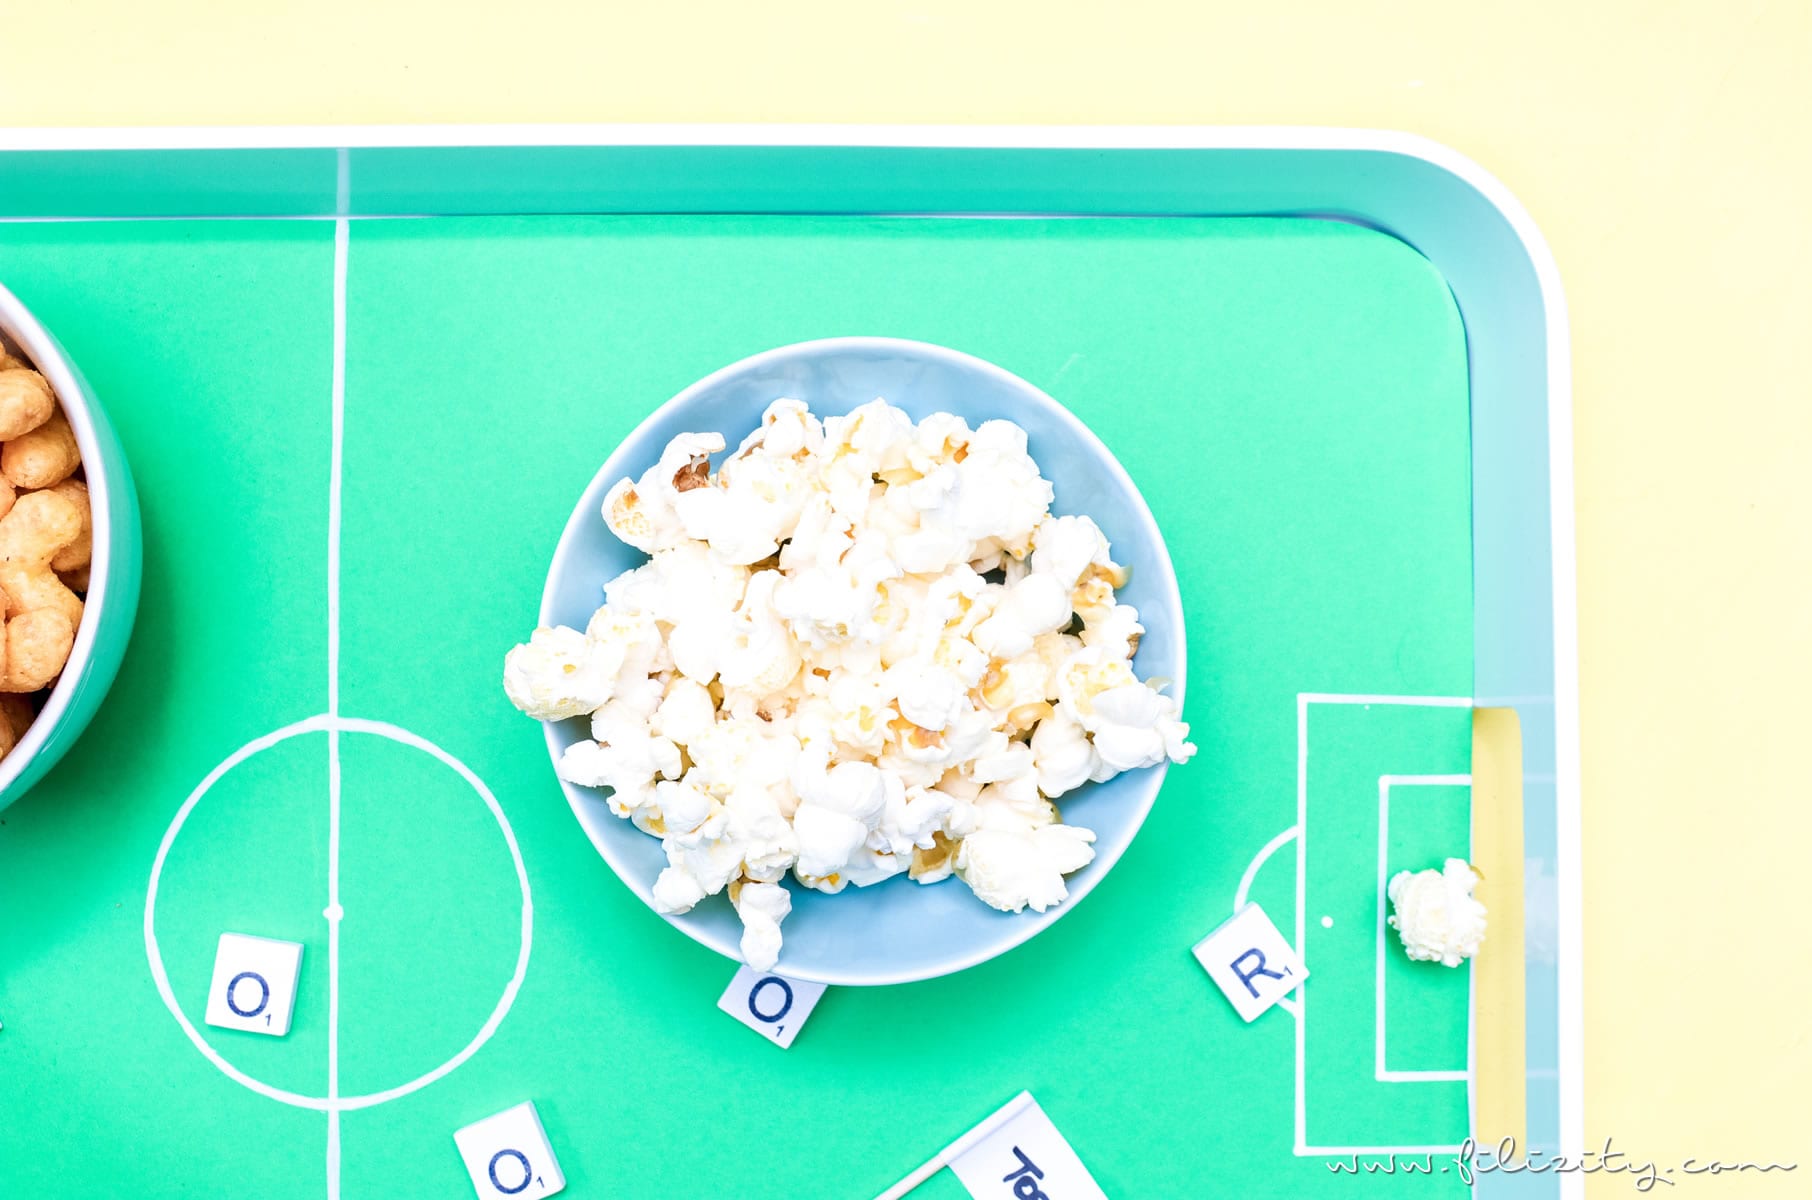 DIY Fußballfeld-Tablett - Fandeko für die Fußball WM selber machen | DIY Deko für WM, EM, Bundesliga, Fußball-Party, Kindergebutstag usw. | Filizity.com | DIY-Blog aus dem Rheinland #fußball #wm2018